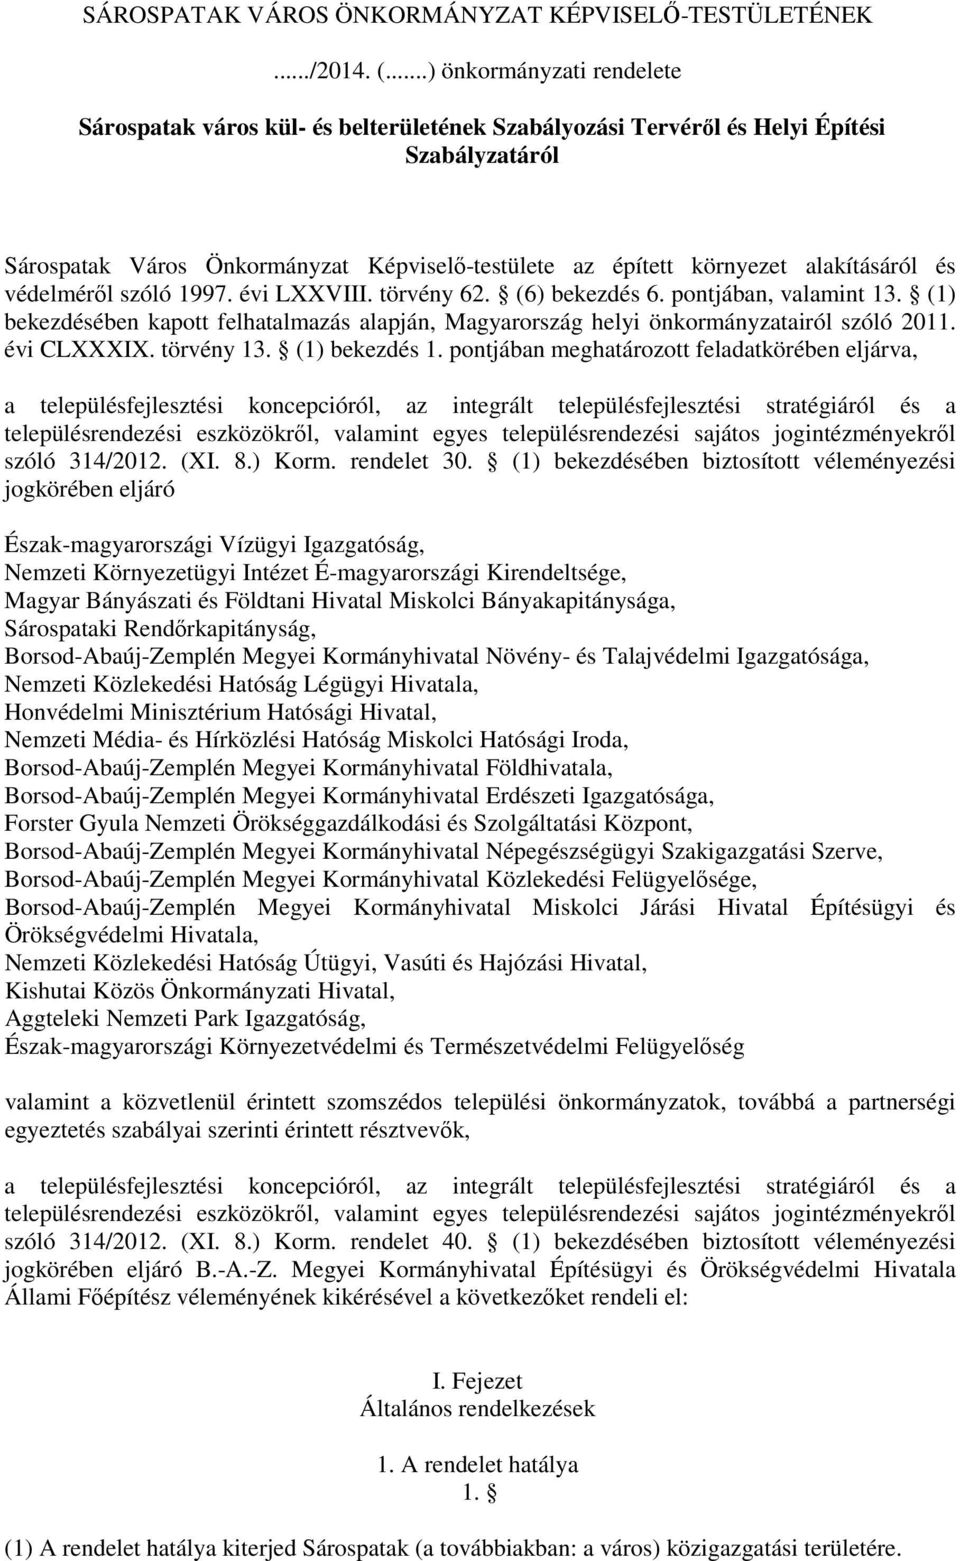 alakításáról és védelméről szóló 1997. évi LXXVIII. törvény 62. (6) bekezdés 6. pontjában, valamint 13. (1) bekezdésében kapott felhatalmazás alapján, Magyarország helyi önkormányzatairól szóló 2011.